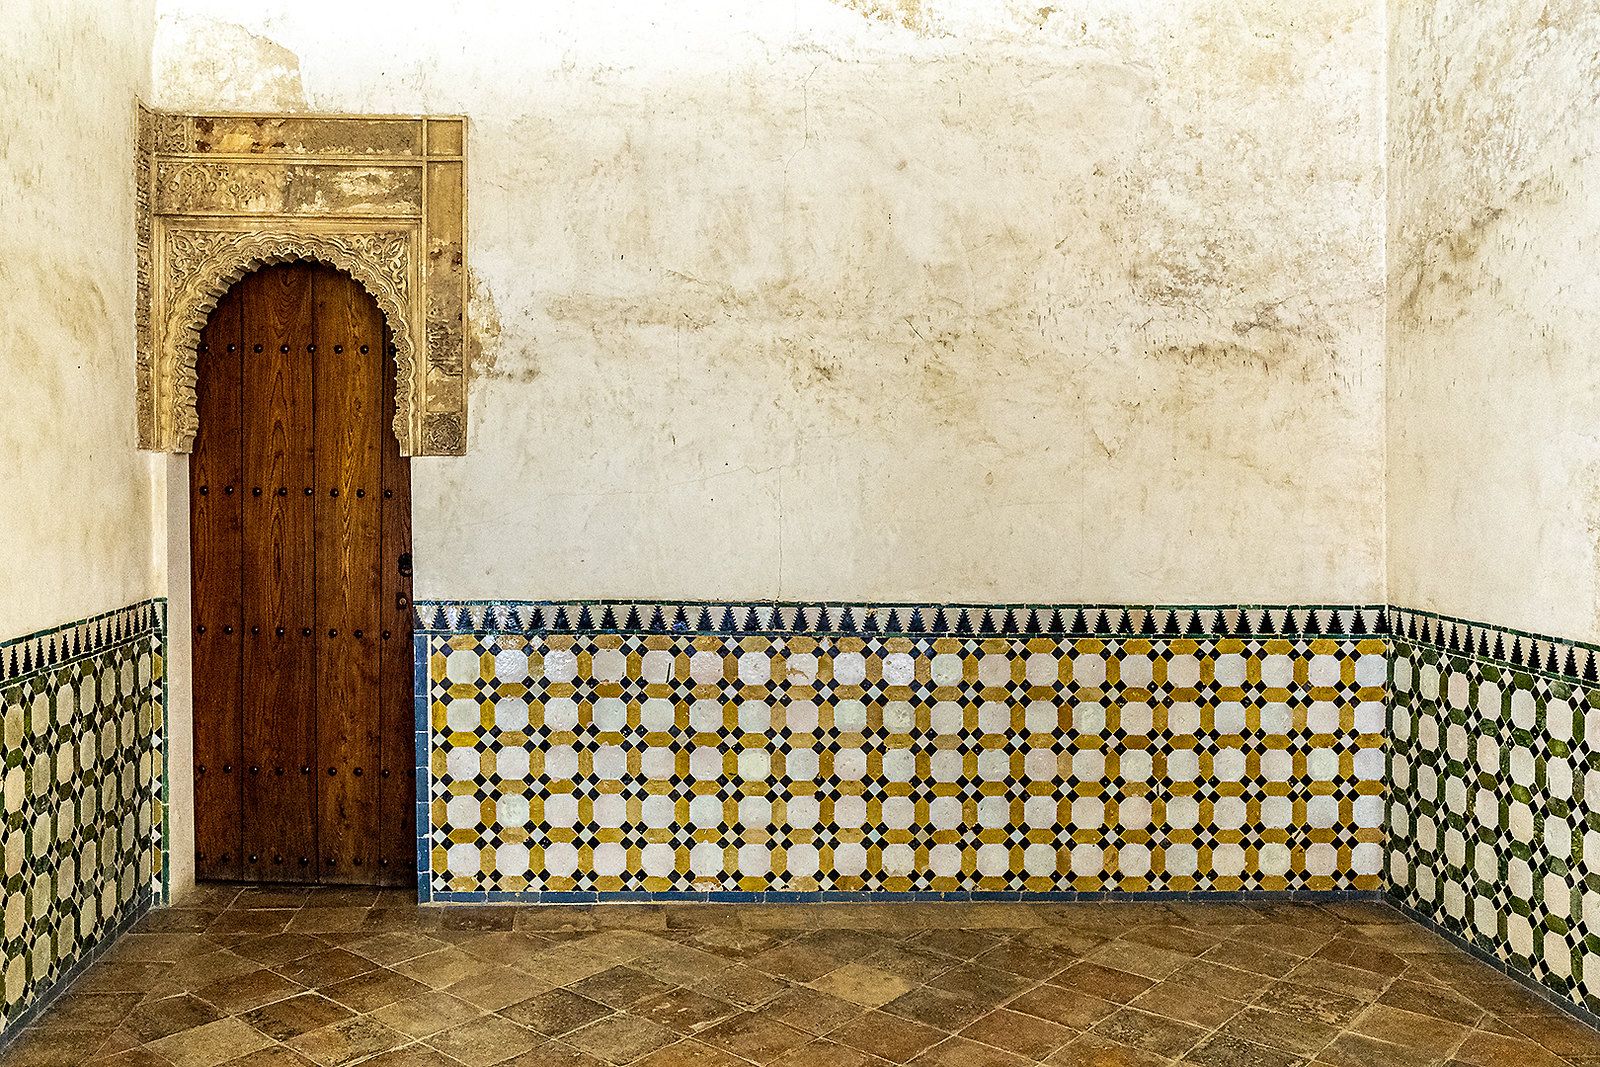 La sala de 'La Barca' en La Alhambra. Se cree que viene de la forma abovedada del techo y sin embargo proviene de 'baraka', Sala de las Bendiciones que se debía recibir antes del encuentor con el rey nazarí. Foto: Flickr de Ipomar47.